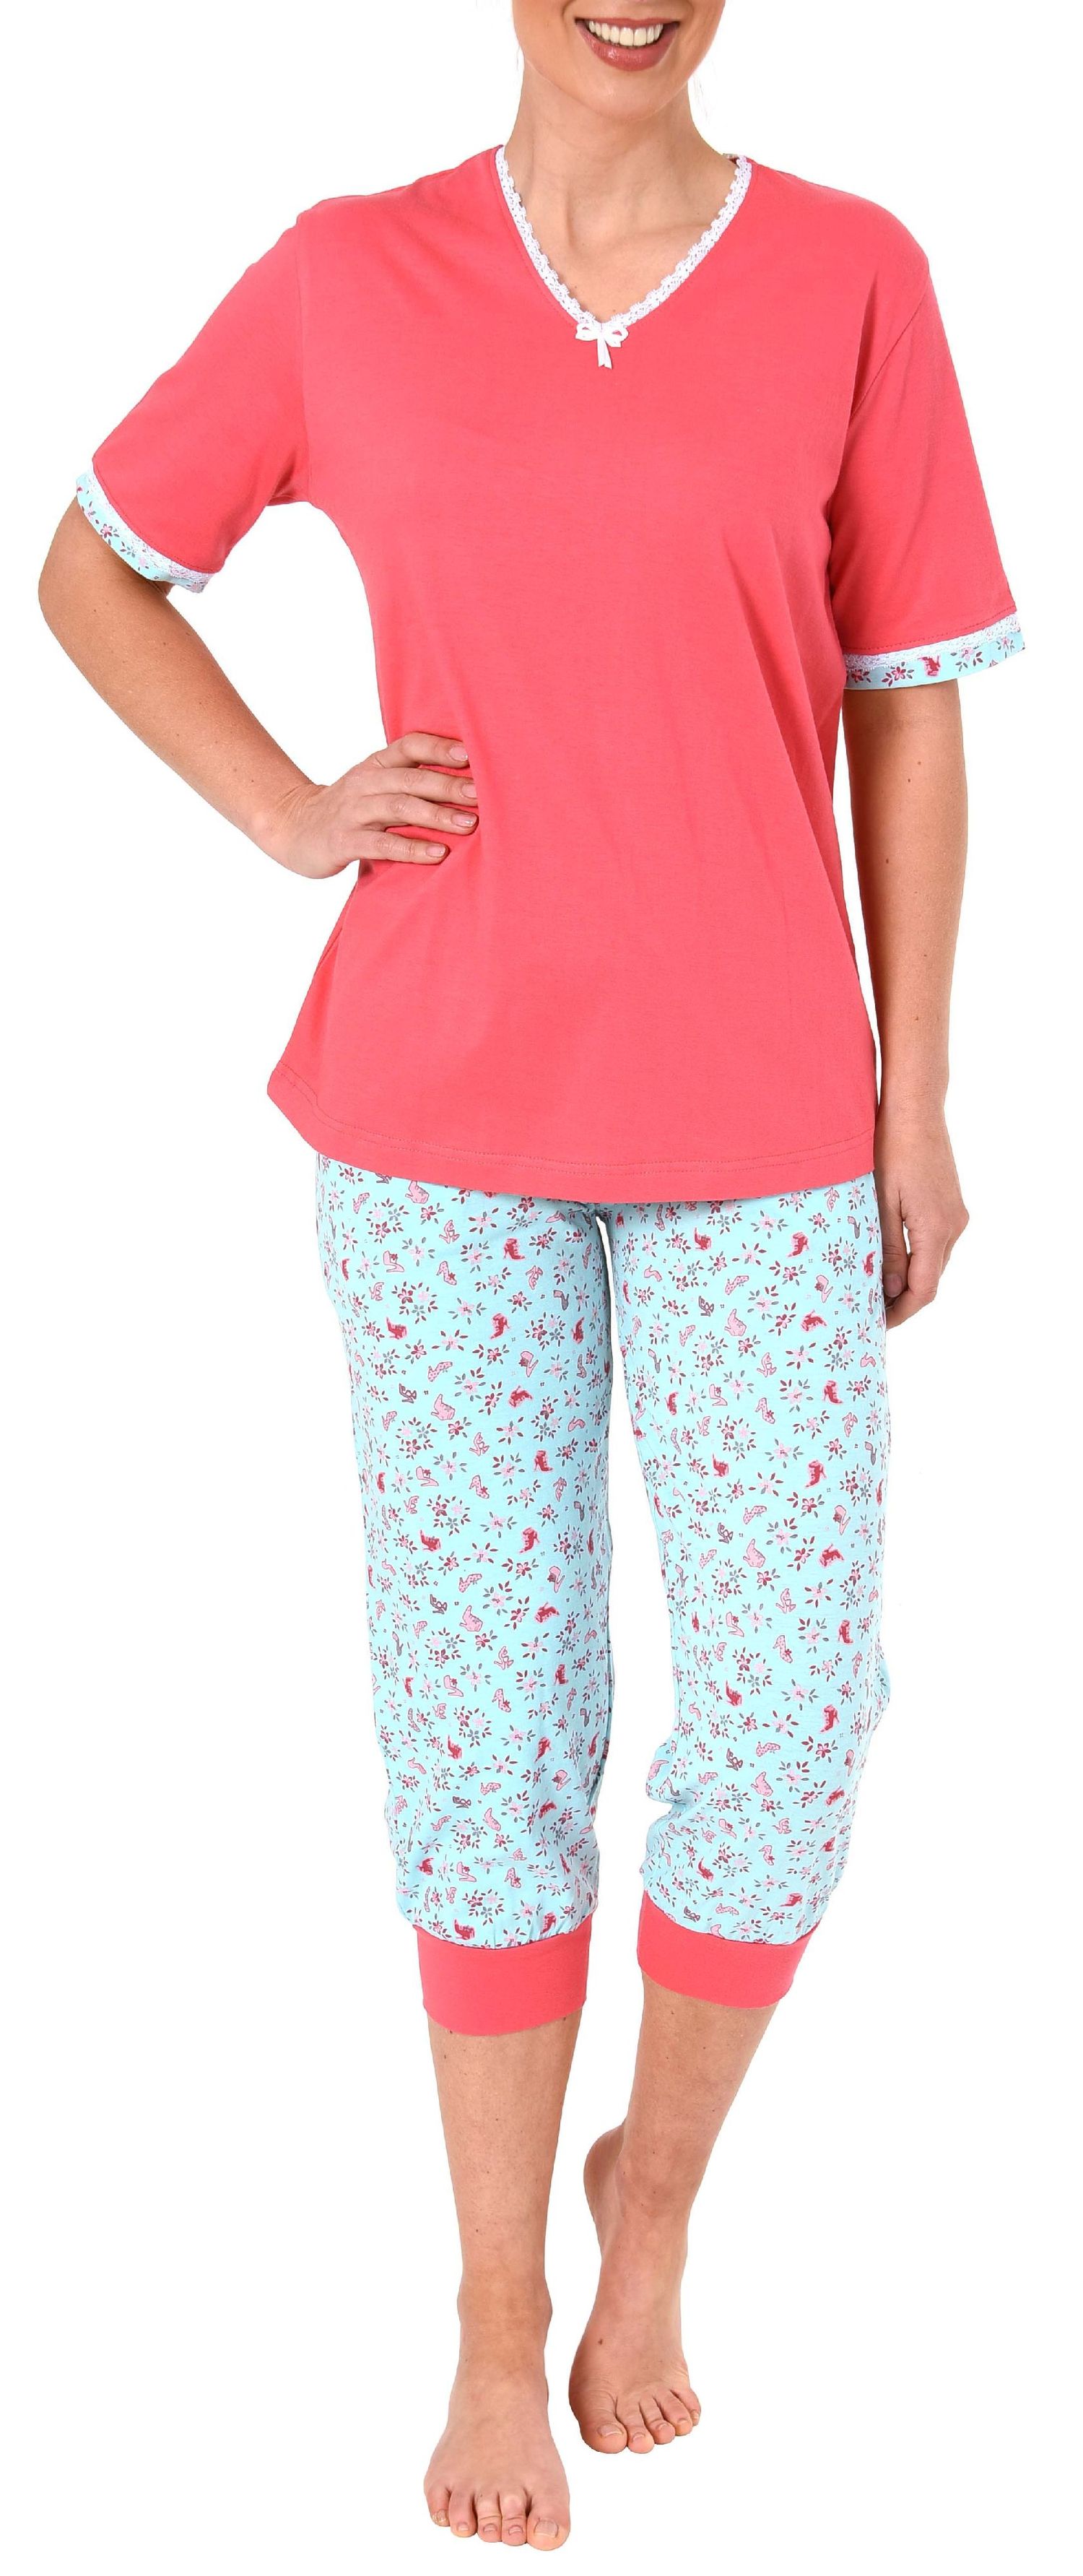 Normann Damen Capri-Pyjama kurzarm – auch in Übergrössen erhältlich bis Grösse 60/62 - 191 204 90 214